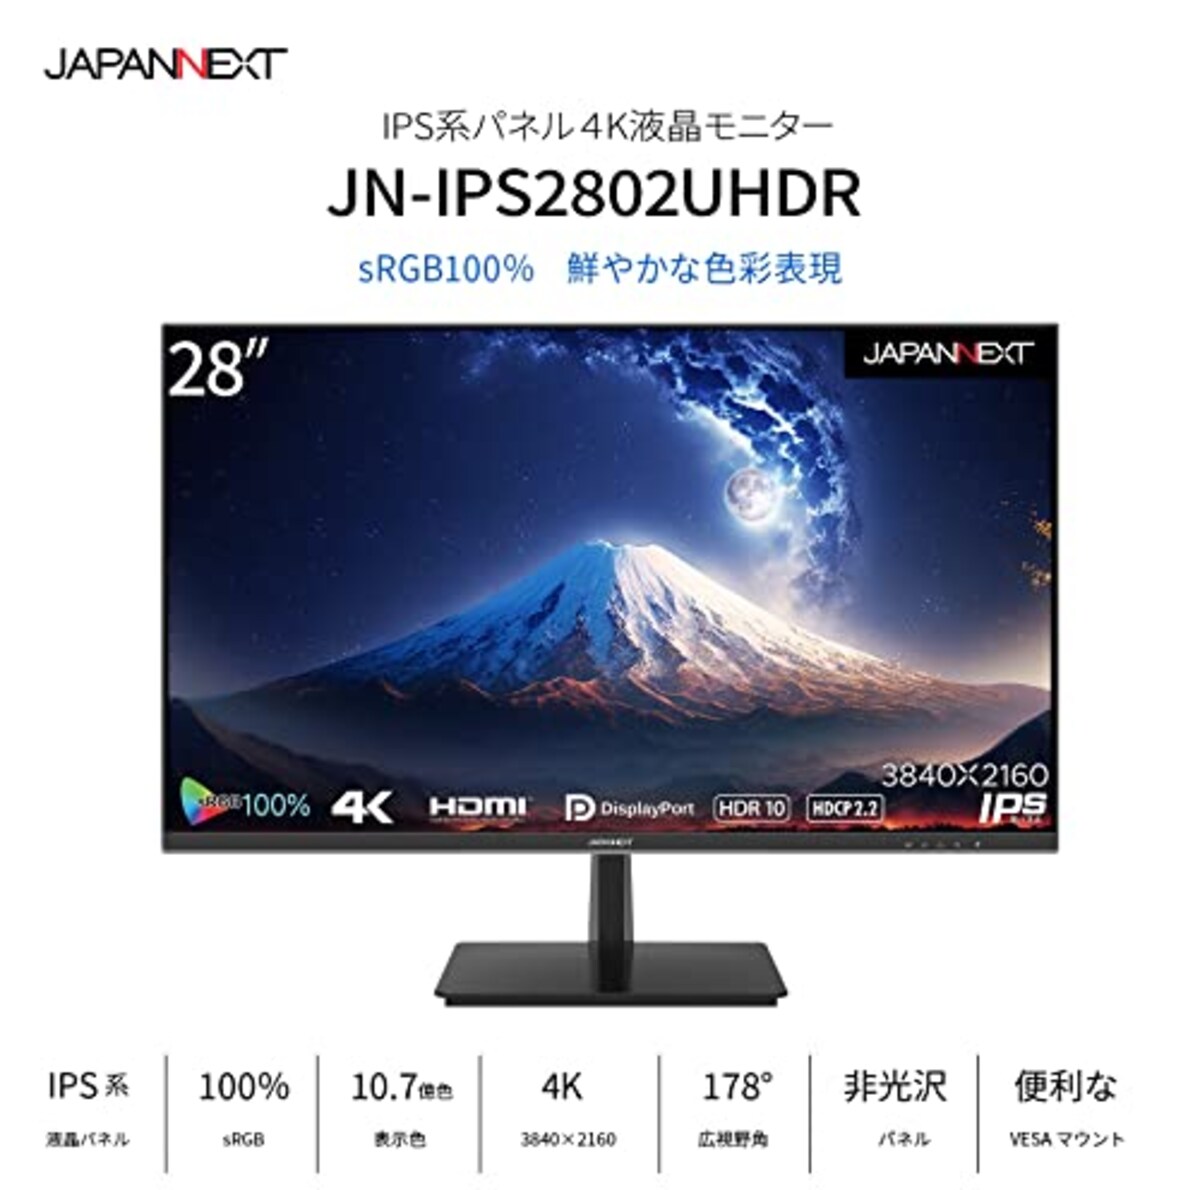  JAPANNEXT 28インチ IPSパネル 4K(3840x2160)液晶モニター HDR対応 JN-IPS2802UHDR HDMI DP sRGB100% PIP/PBP対応画像3 